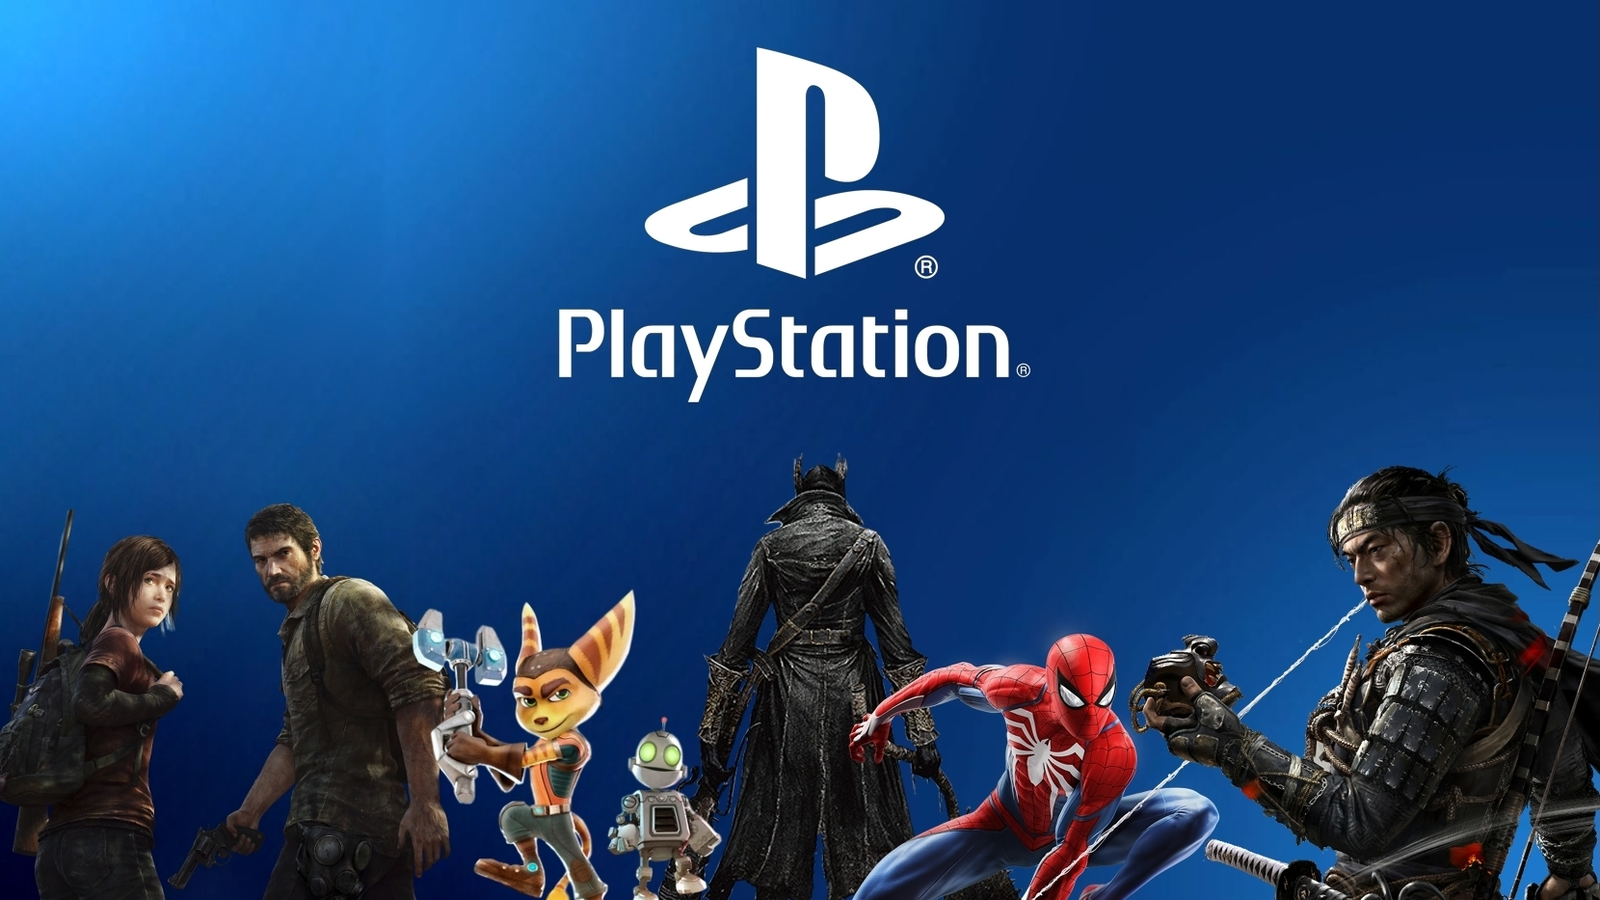 Promoção PlayStation: Jogos da FromSoftware e exclusivos em oferta!